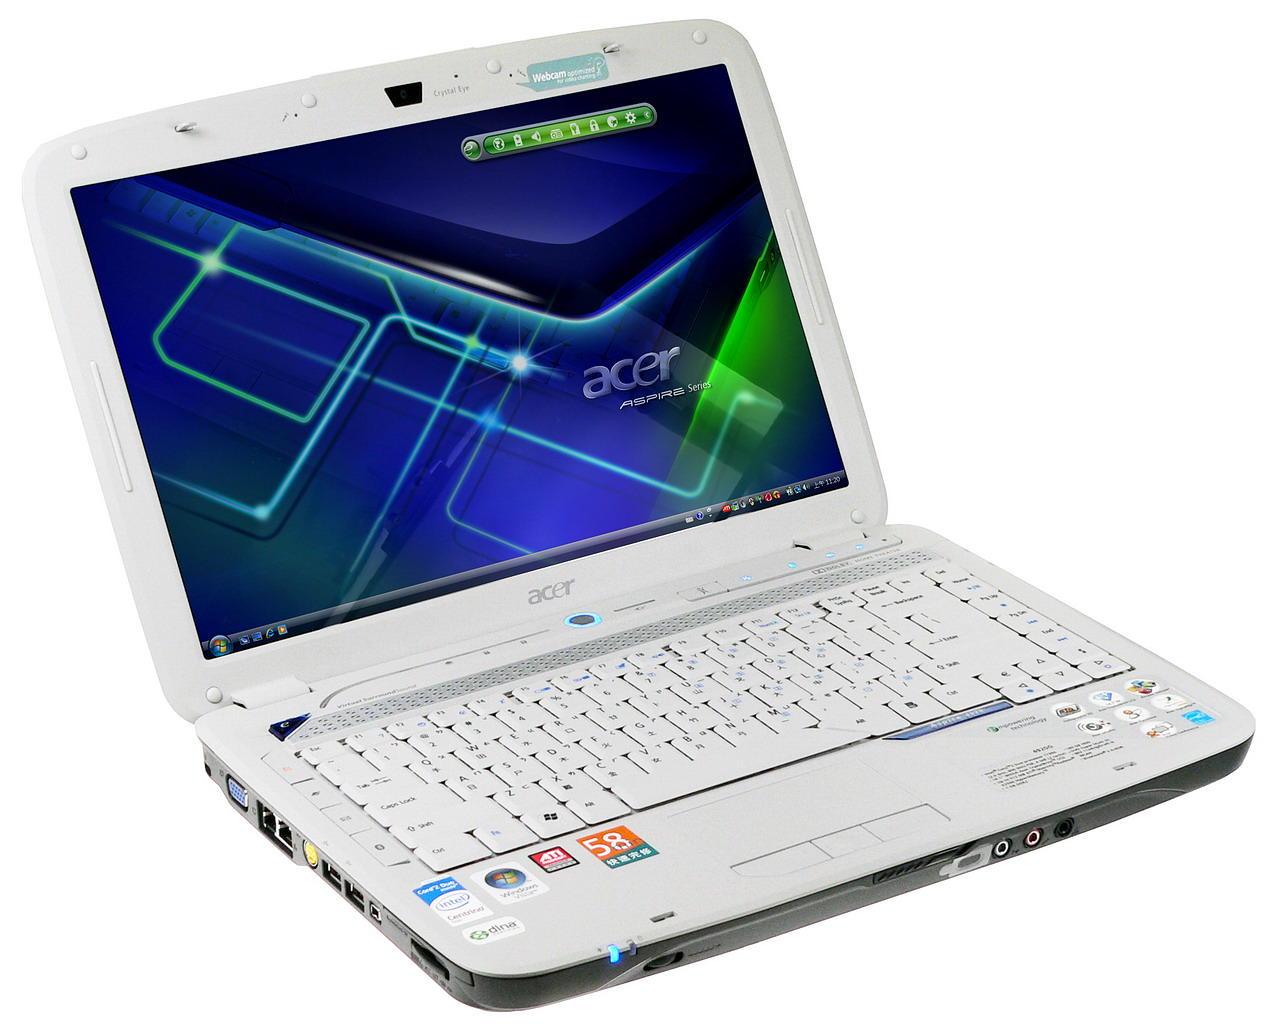 Gambar Notebook/Laptop Acer Murah dan Terbaru - Kumpulan Gambar Hp